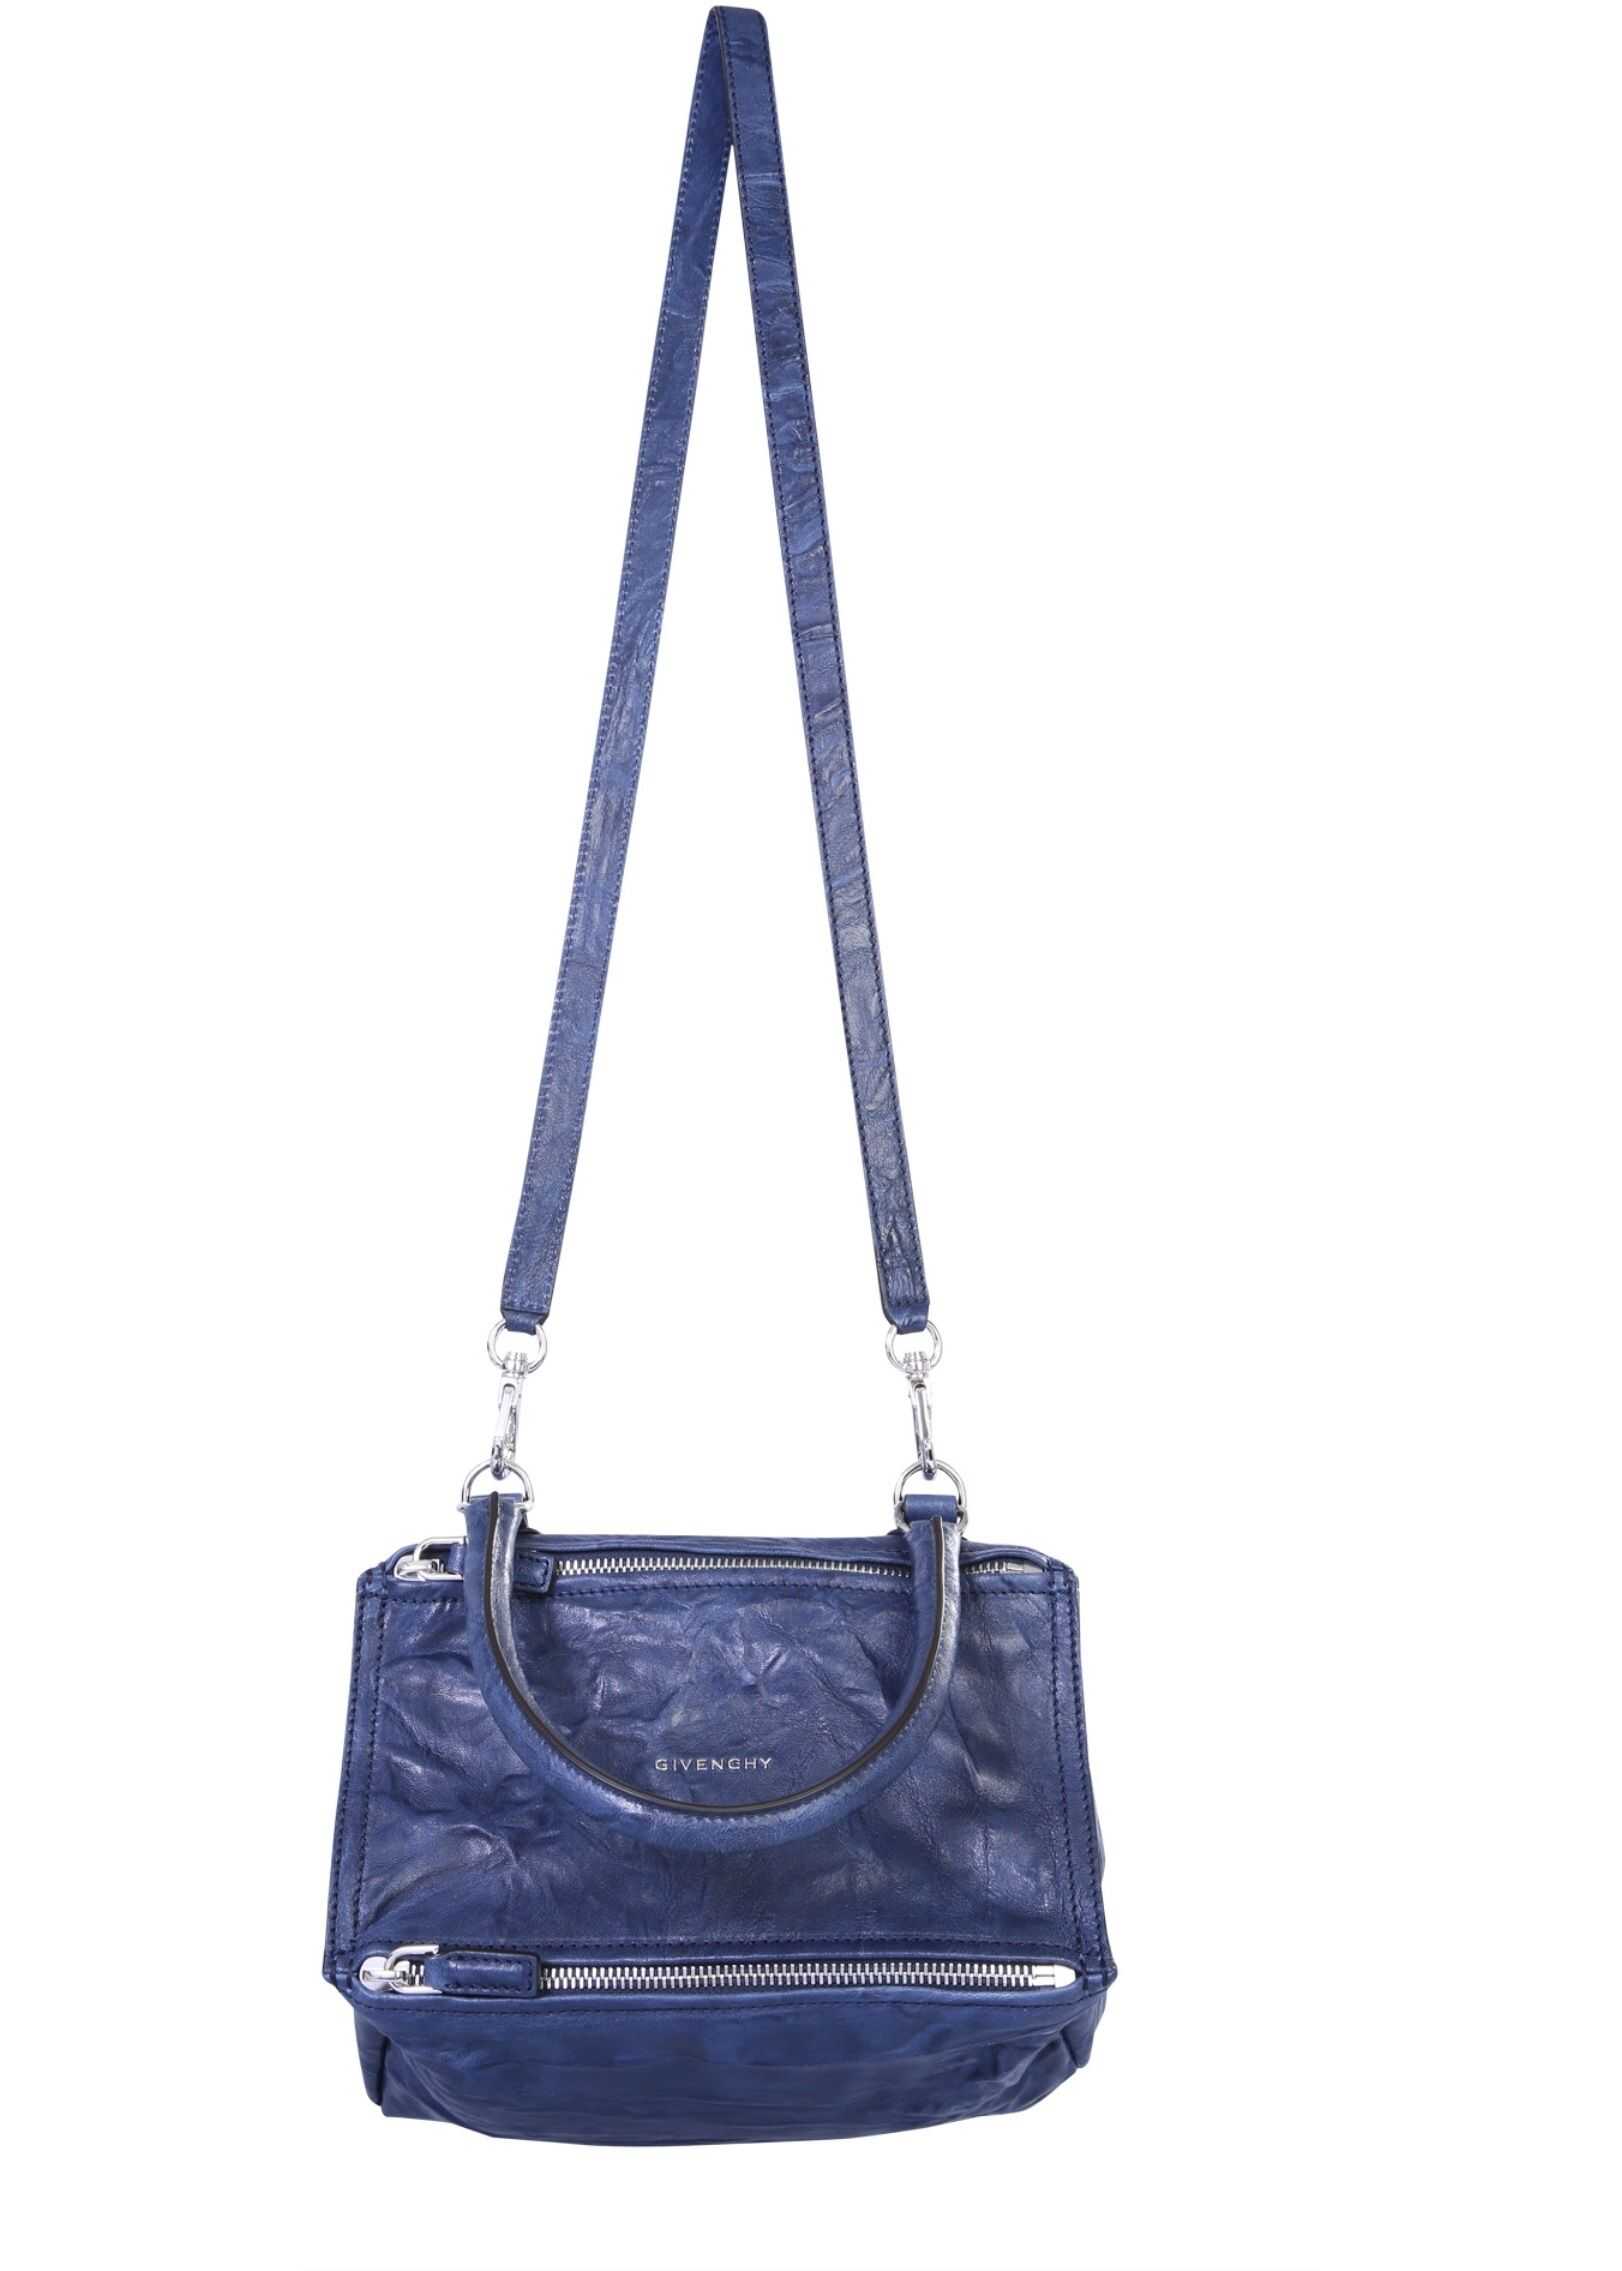 Givenchy Pandora Bag BLUE